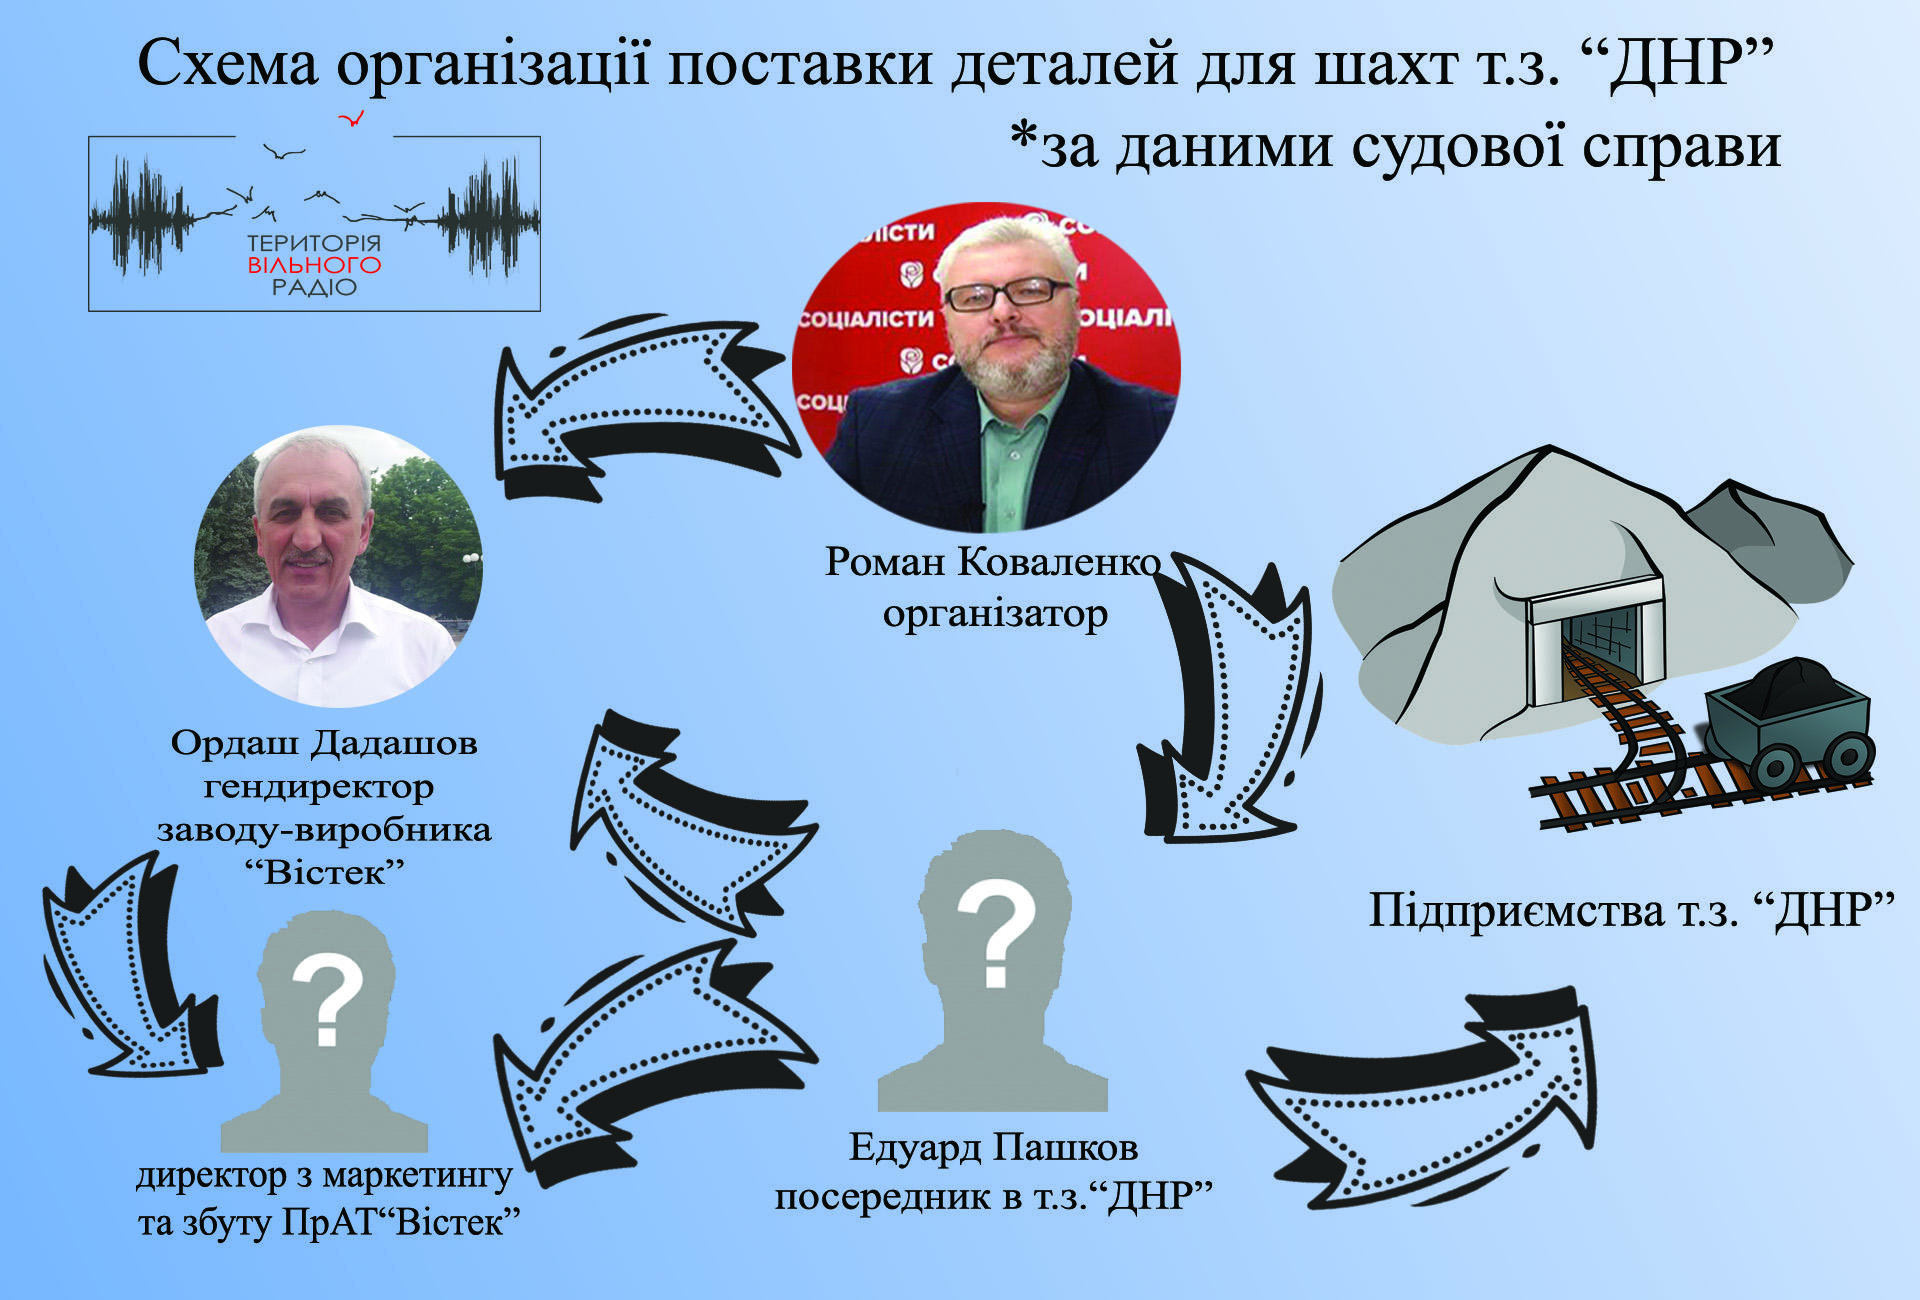 Экс-гендиректору “Вистек” и его заместителю объявили о подозрении в финансировании боевиков т.н. “ДНР” 1